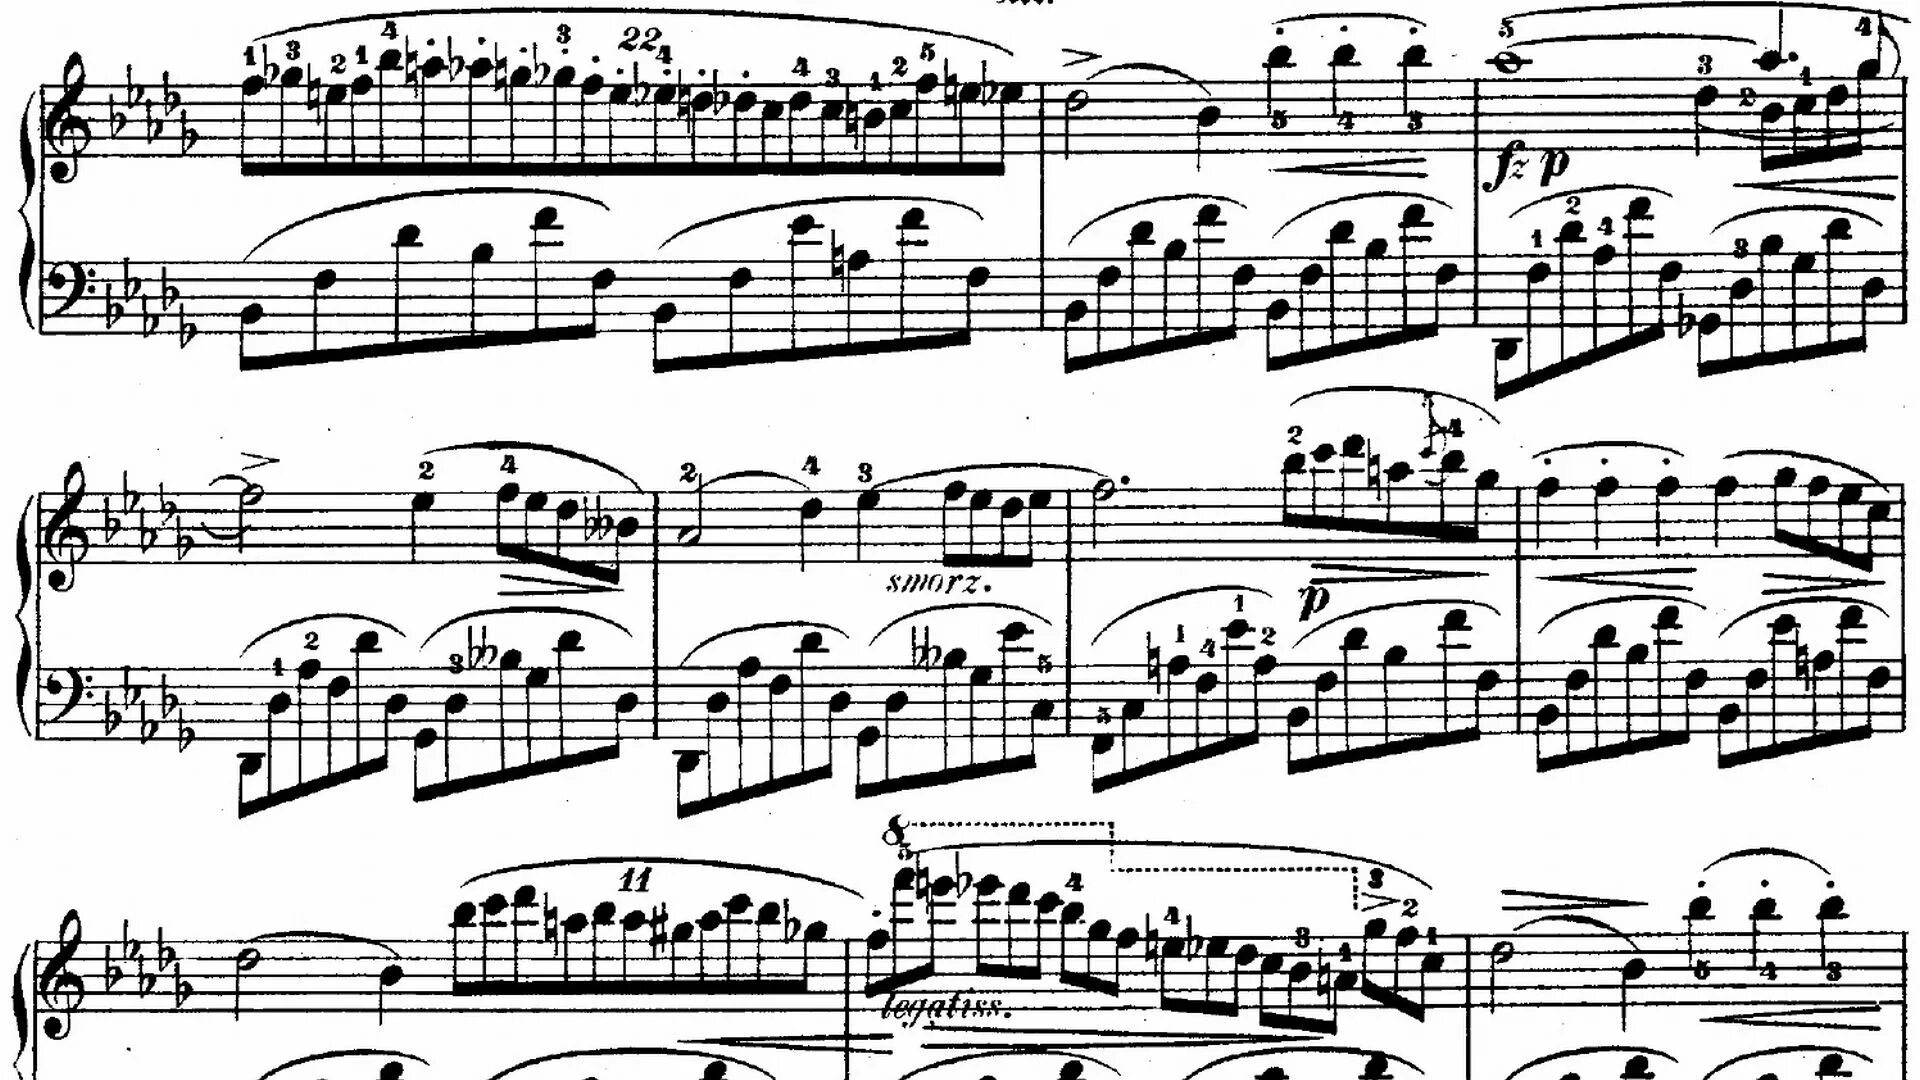 Nocturne no.1 in b Flat Minor, op.9 no.1. Nocturne no.1 in b Flat Minor, op.9 no.1 Шопен. Nocturne op. 9 No. 1 in b-Flat Minor. Nocturne no. 1 in b-Flat Minor, op. 9 No. 1 Клаудио Аррау.